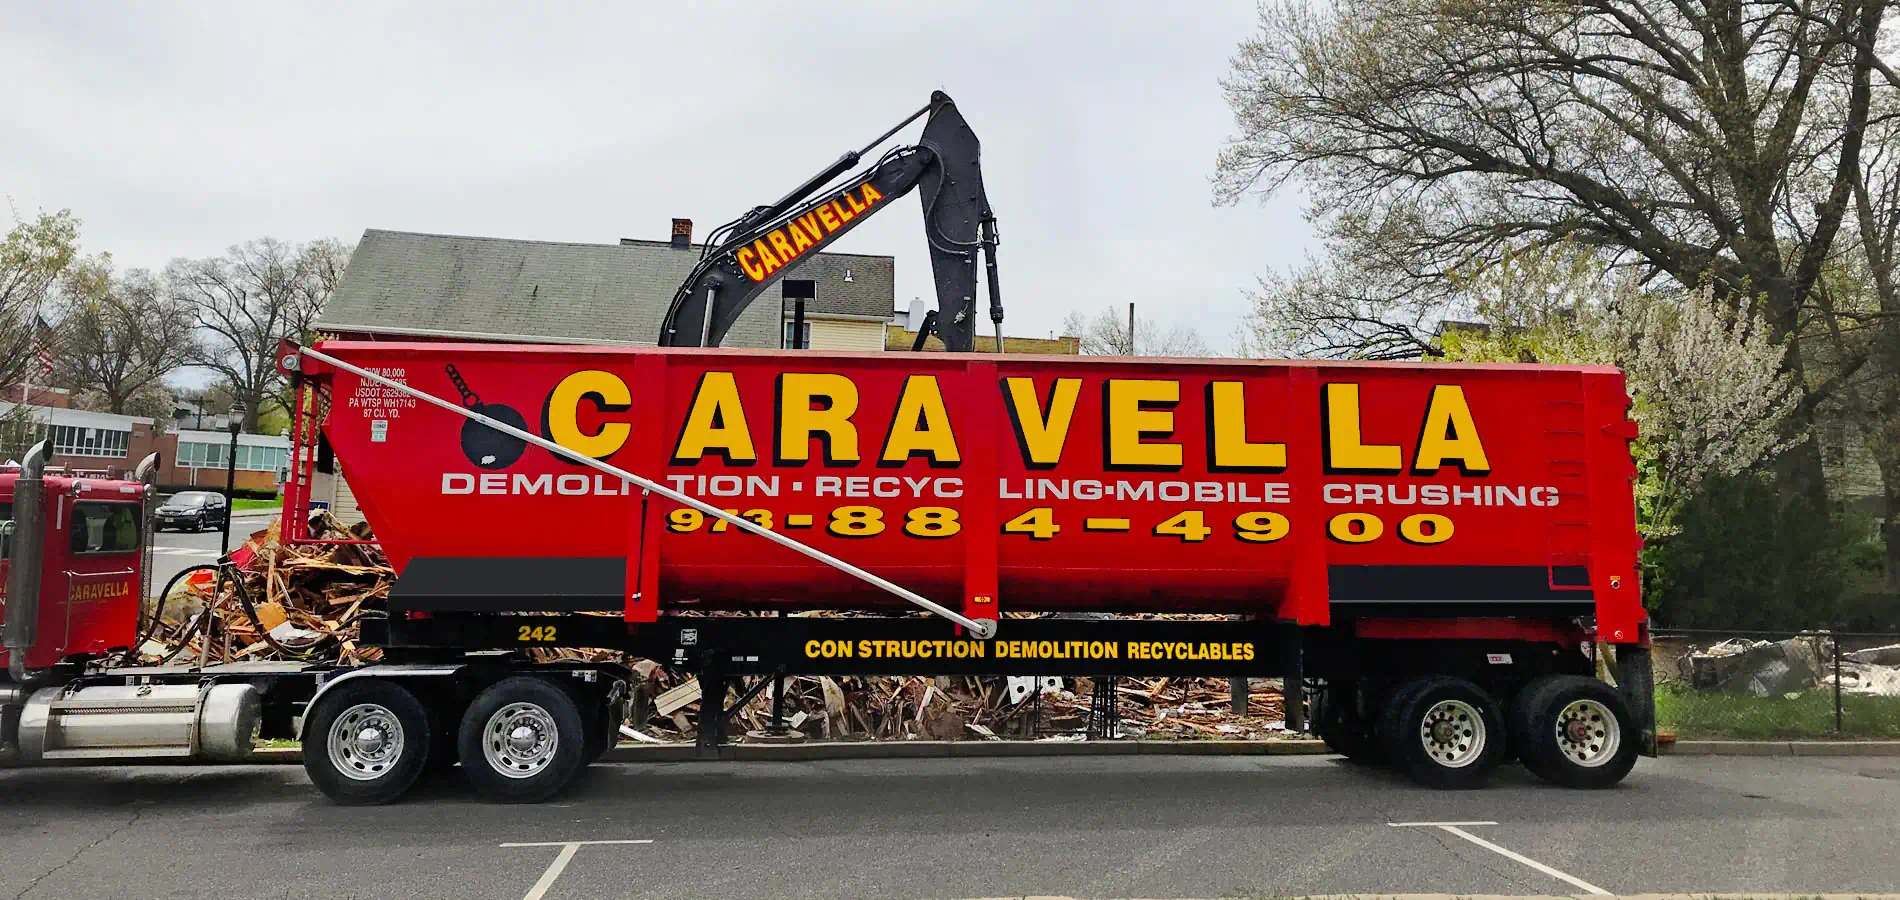 Demolition Services in Asbury Park, NJ 07712 | Caravella Demolition